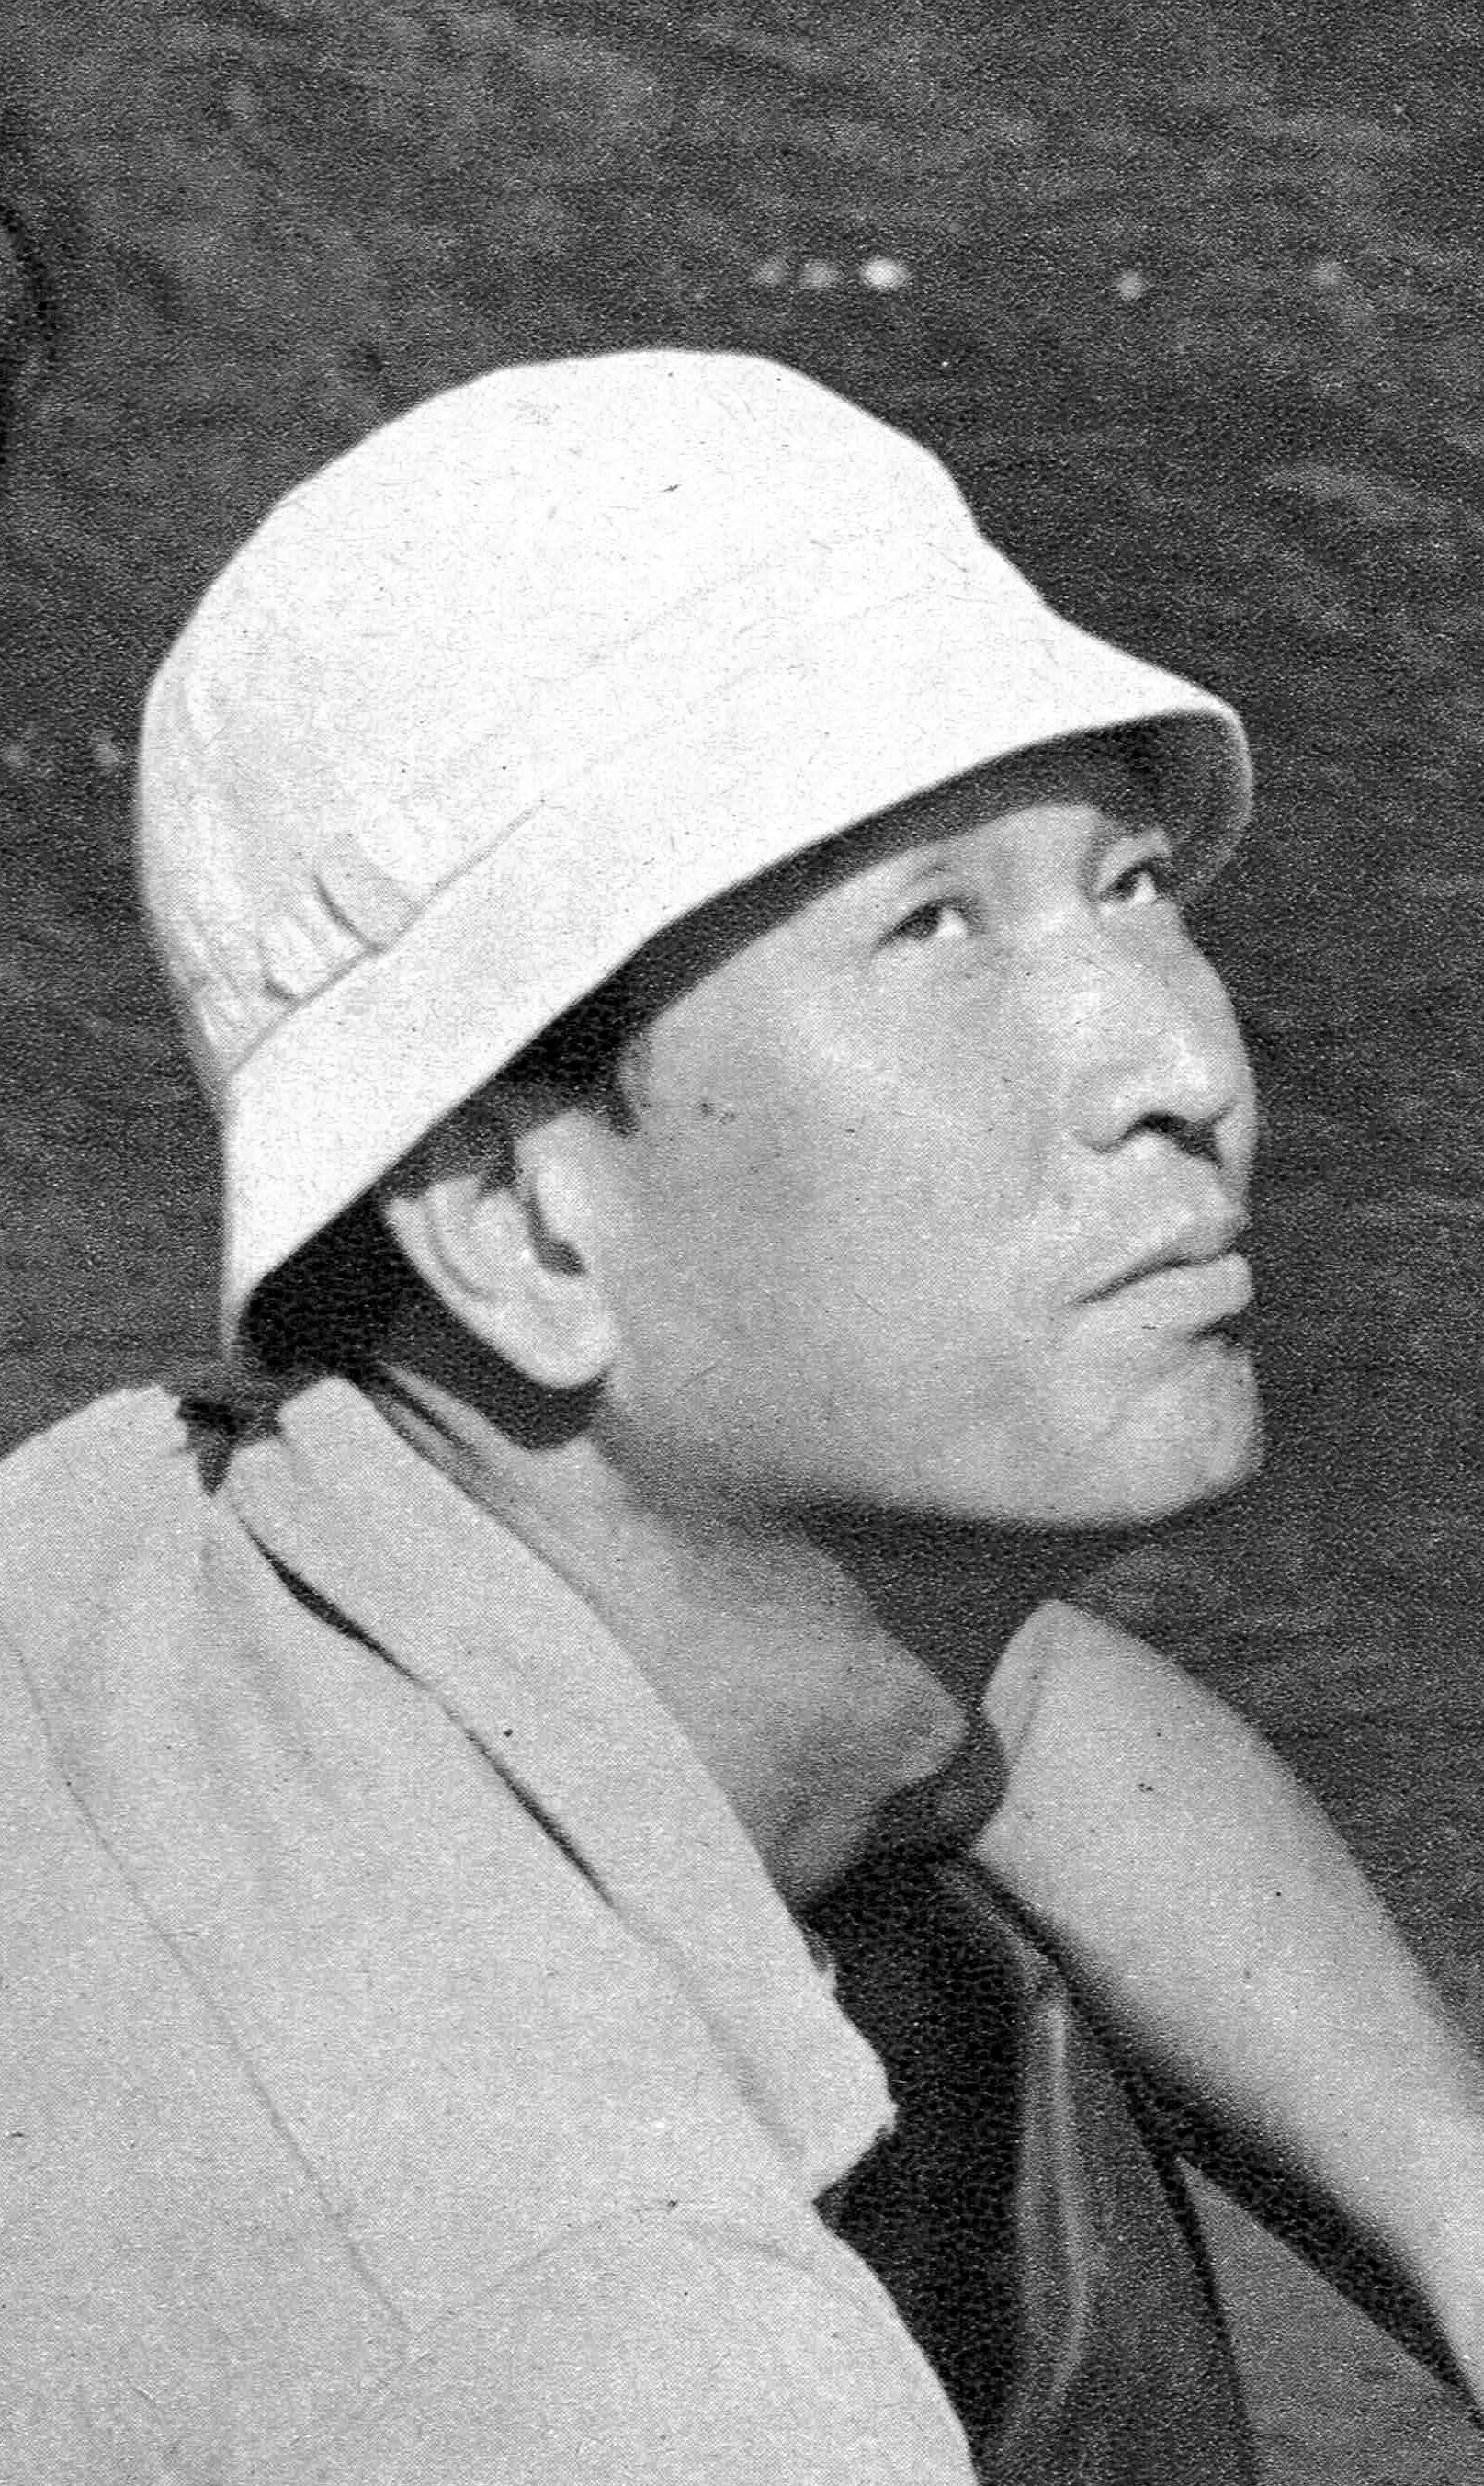 auteur Akira Kurosawa de la citation Les êtres humains partagent les mêmes problèmes communs. Un film ne peut être compris que s'il les représente correctement.